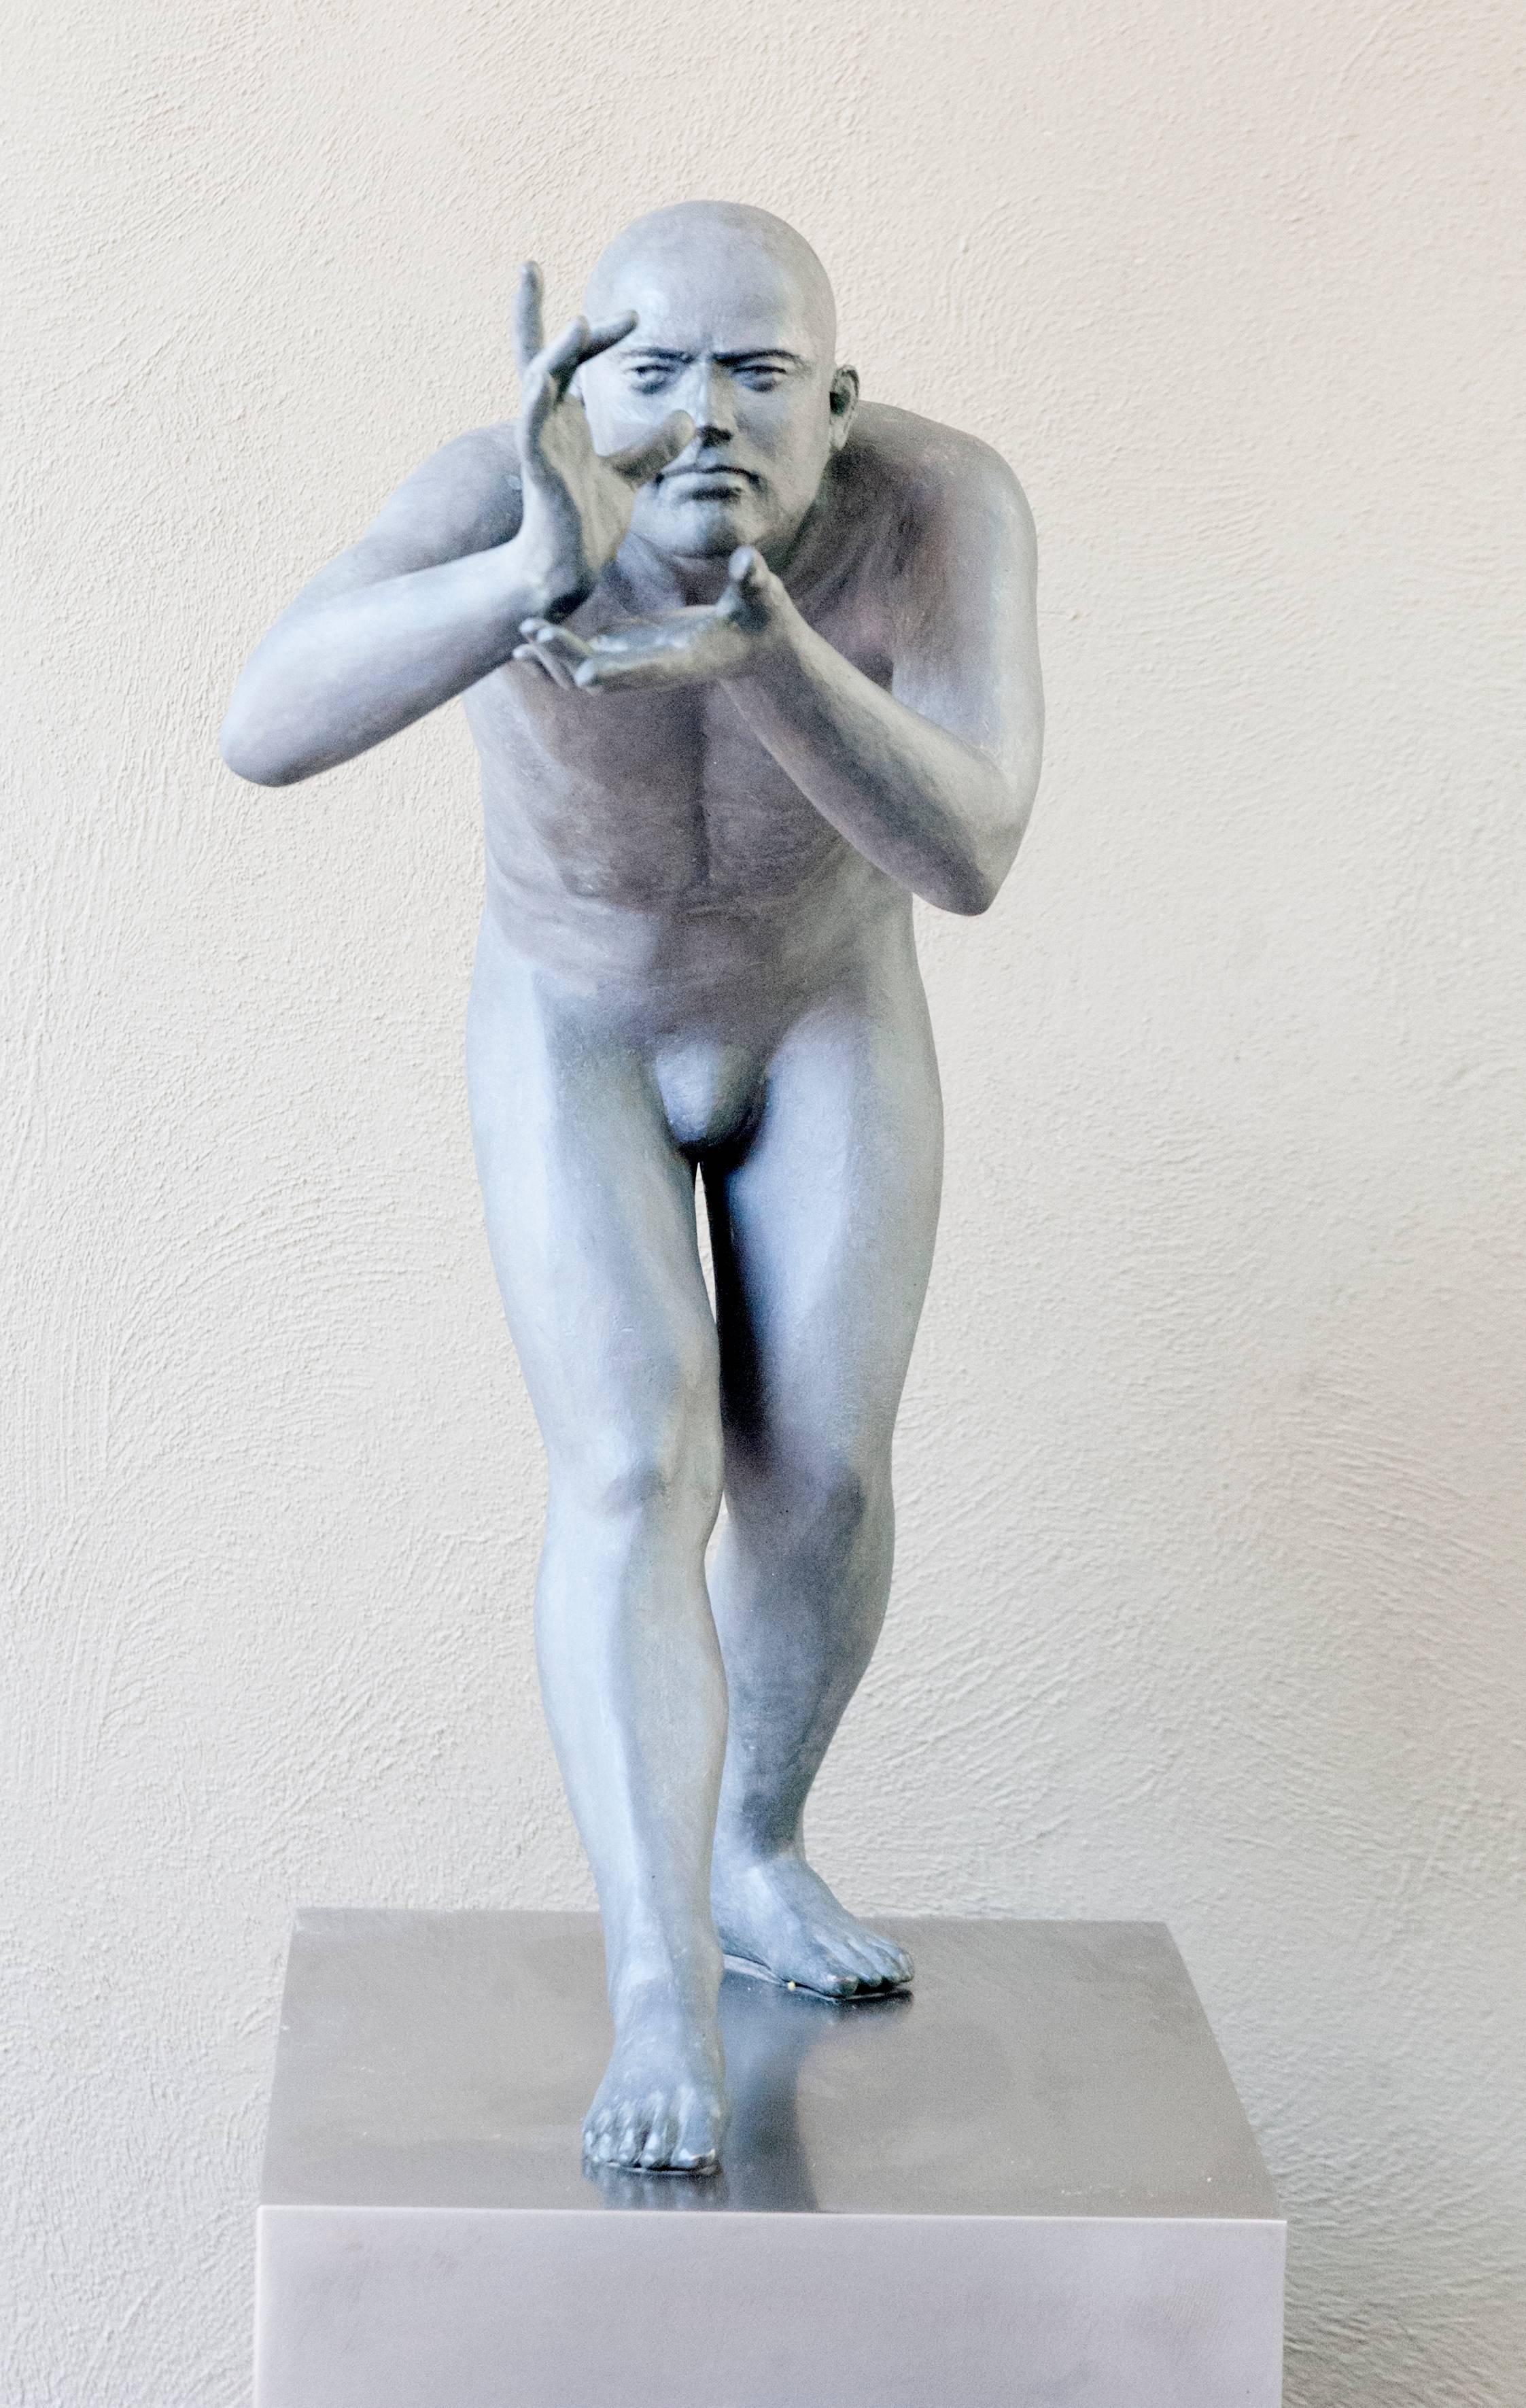 Aurora Canero Figurative Sculpture - Fotografo II, bronze and stainless figurative sculpture